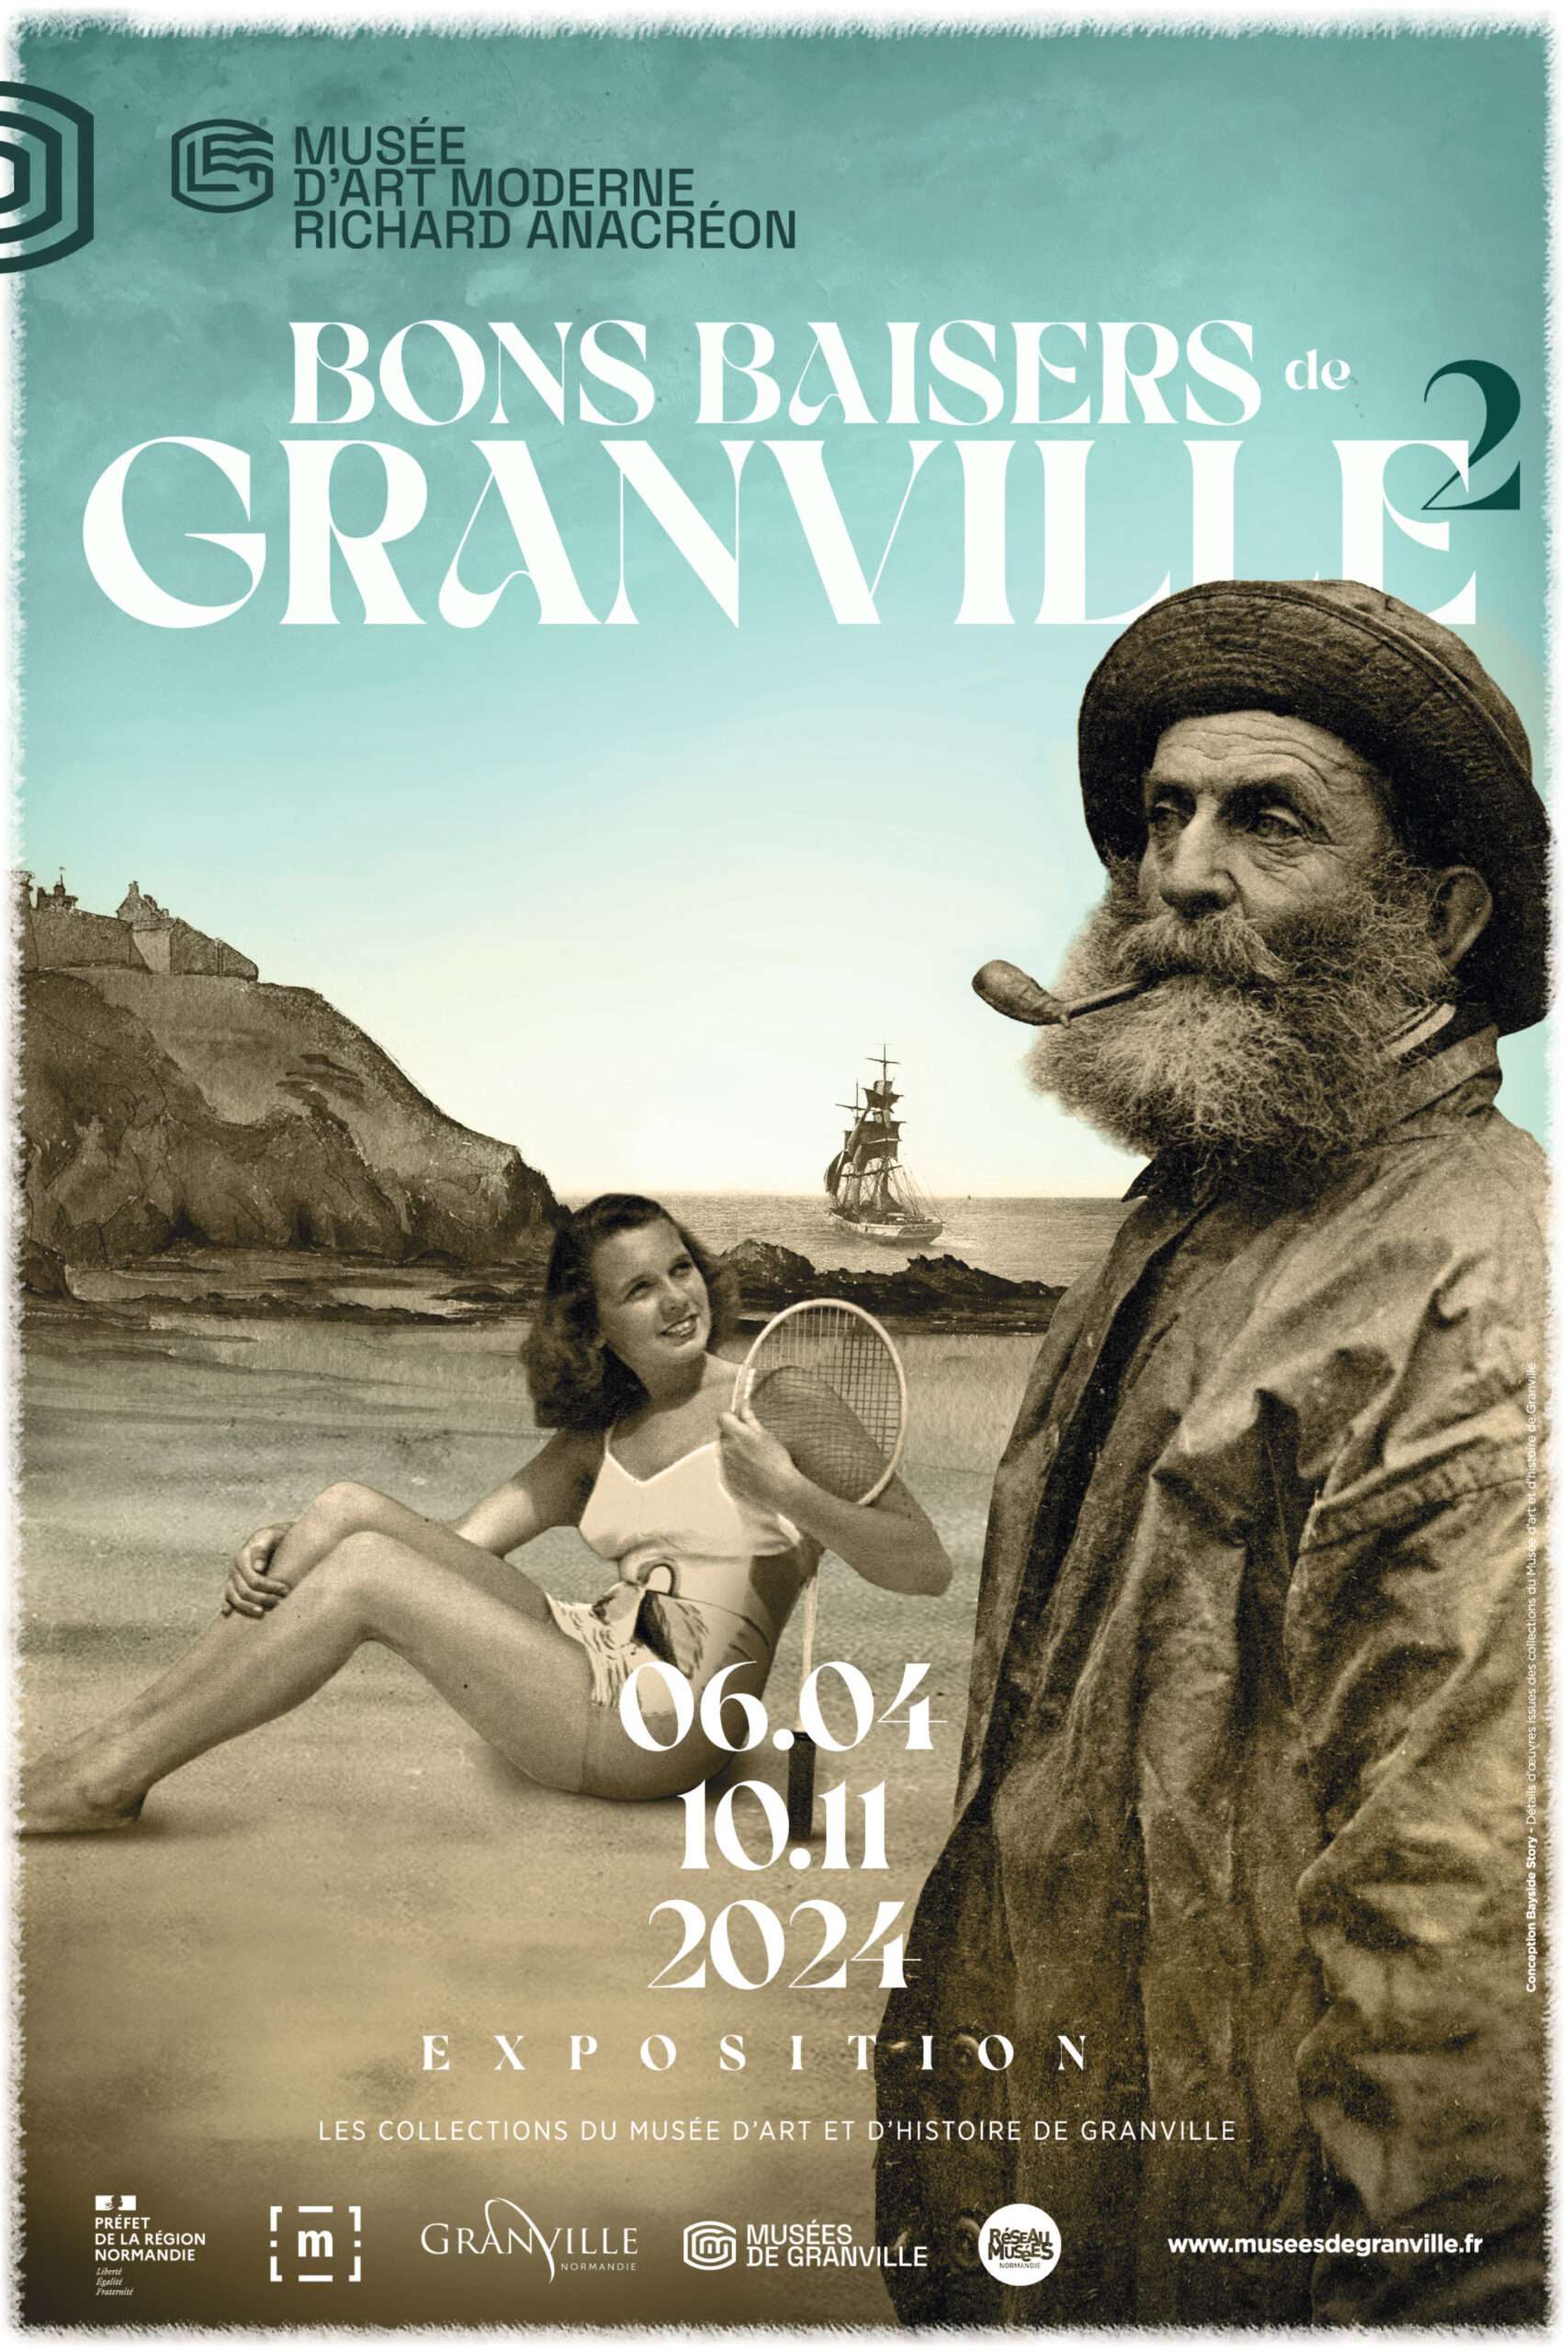 Affiche de l'exposition Bons Baisers de Granville 2 présentée du 6 avril au 10 novembre 2024 au MamRA, Granville